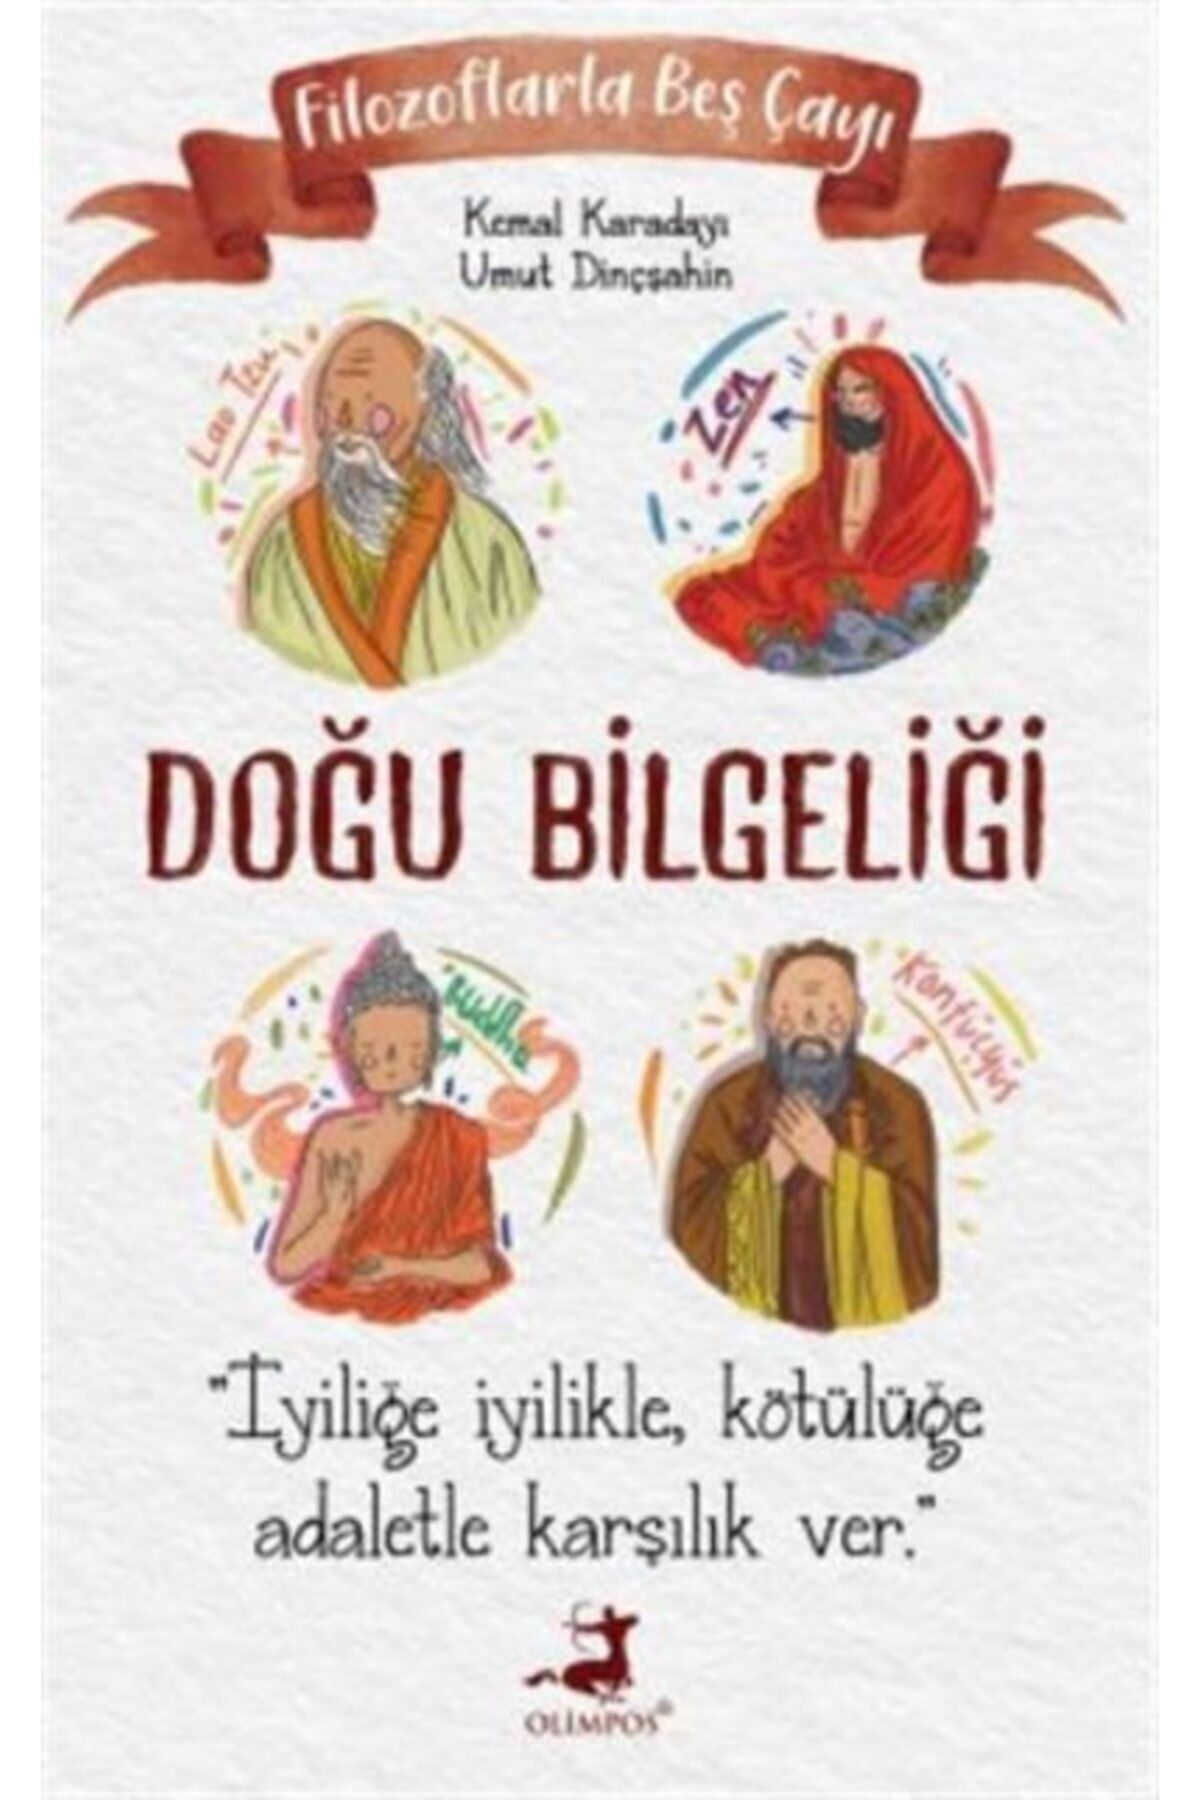 Olimpos Yayınları Filozoflarla Beş Çayı Doğu Bilgeliği - - Kemal Karadayı & Umut Dinçşahin Kitabı